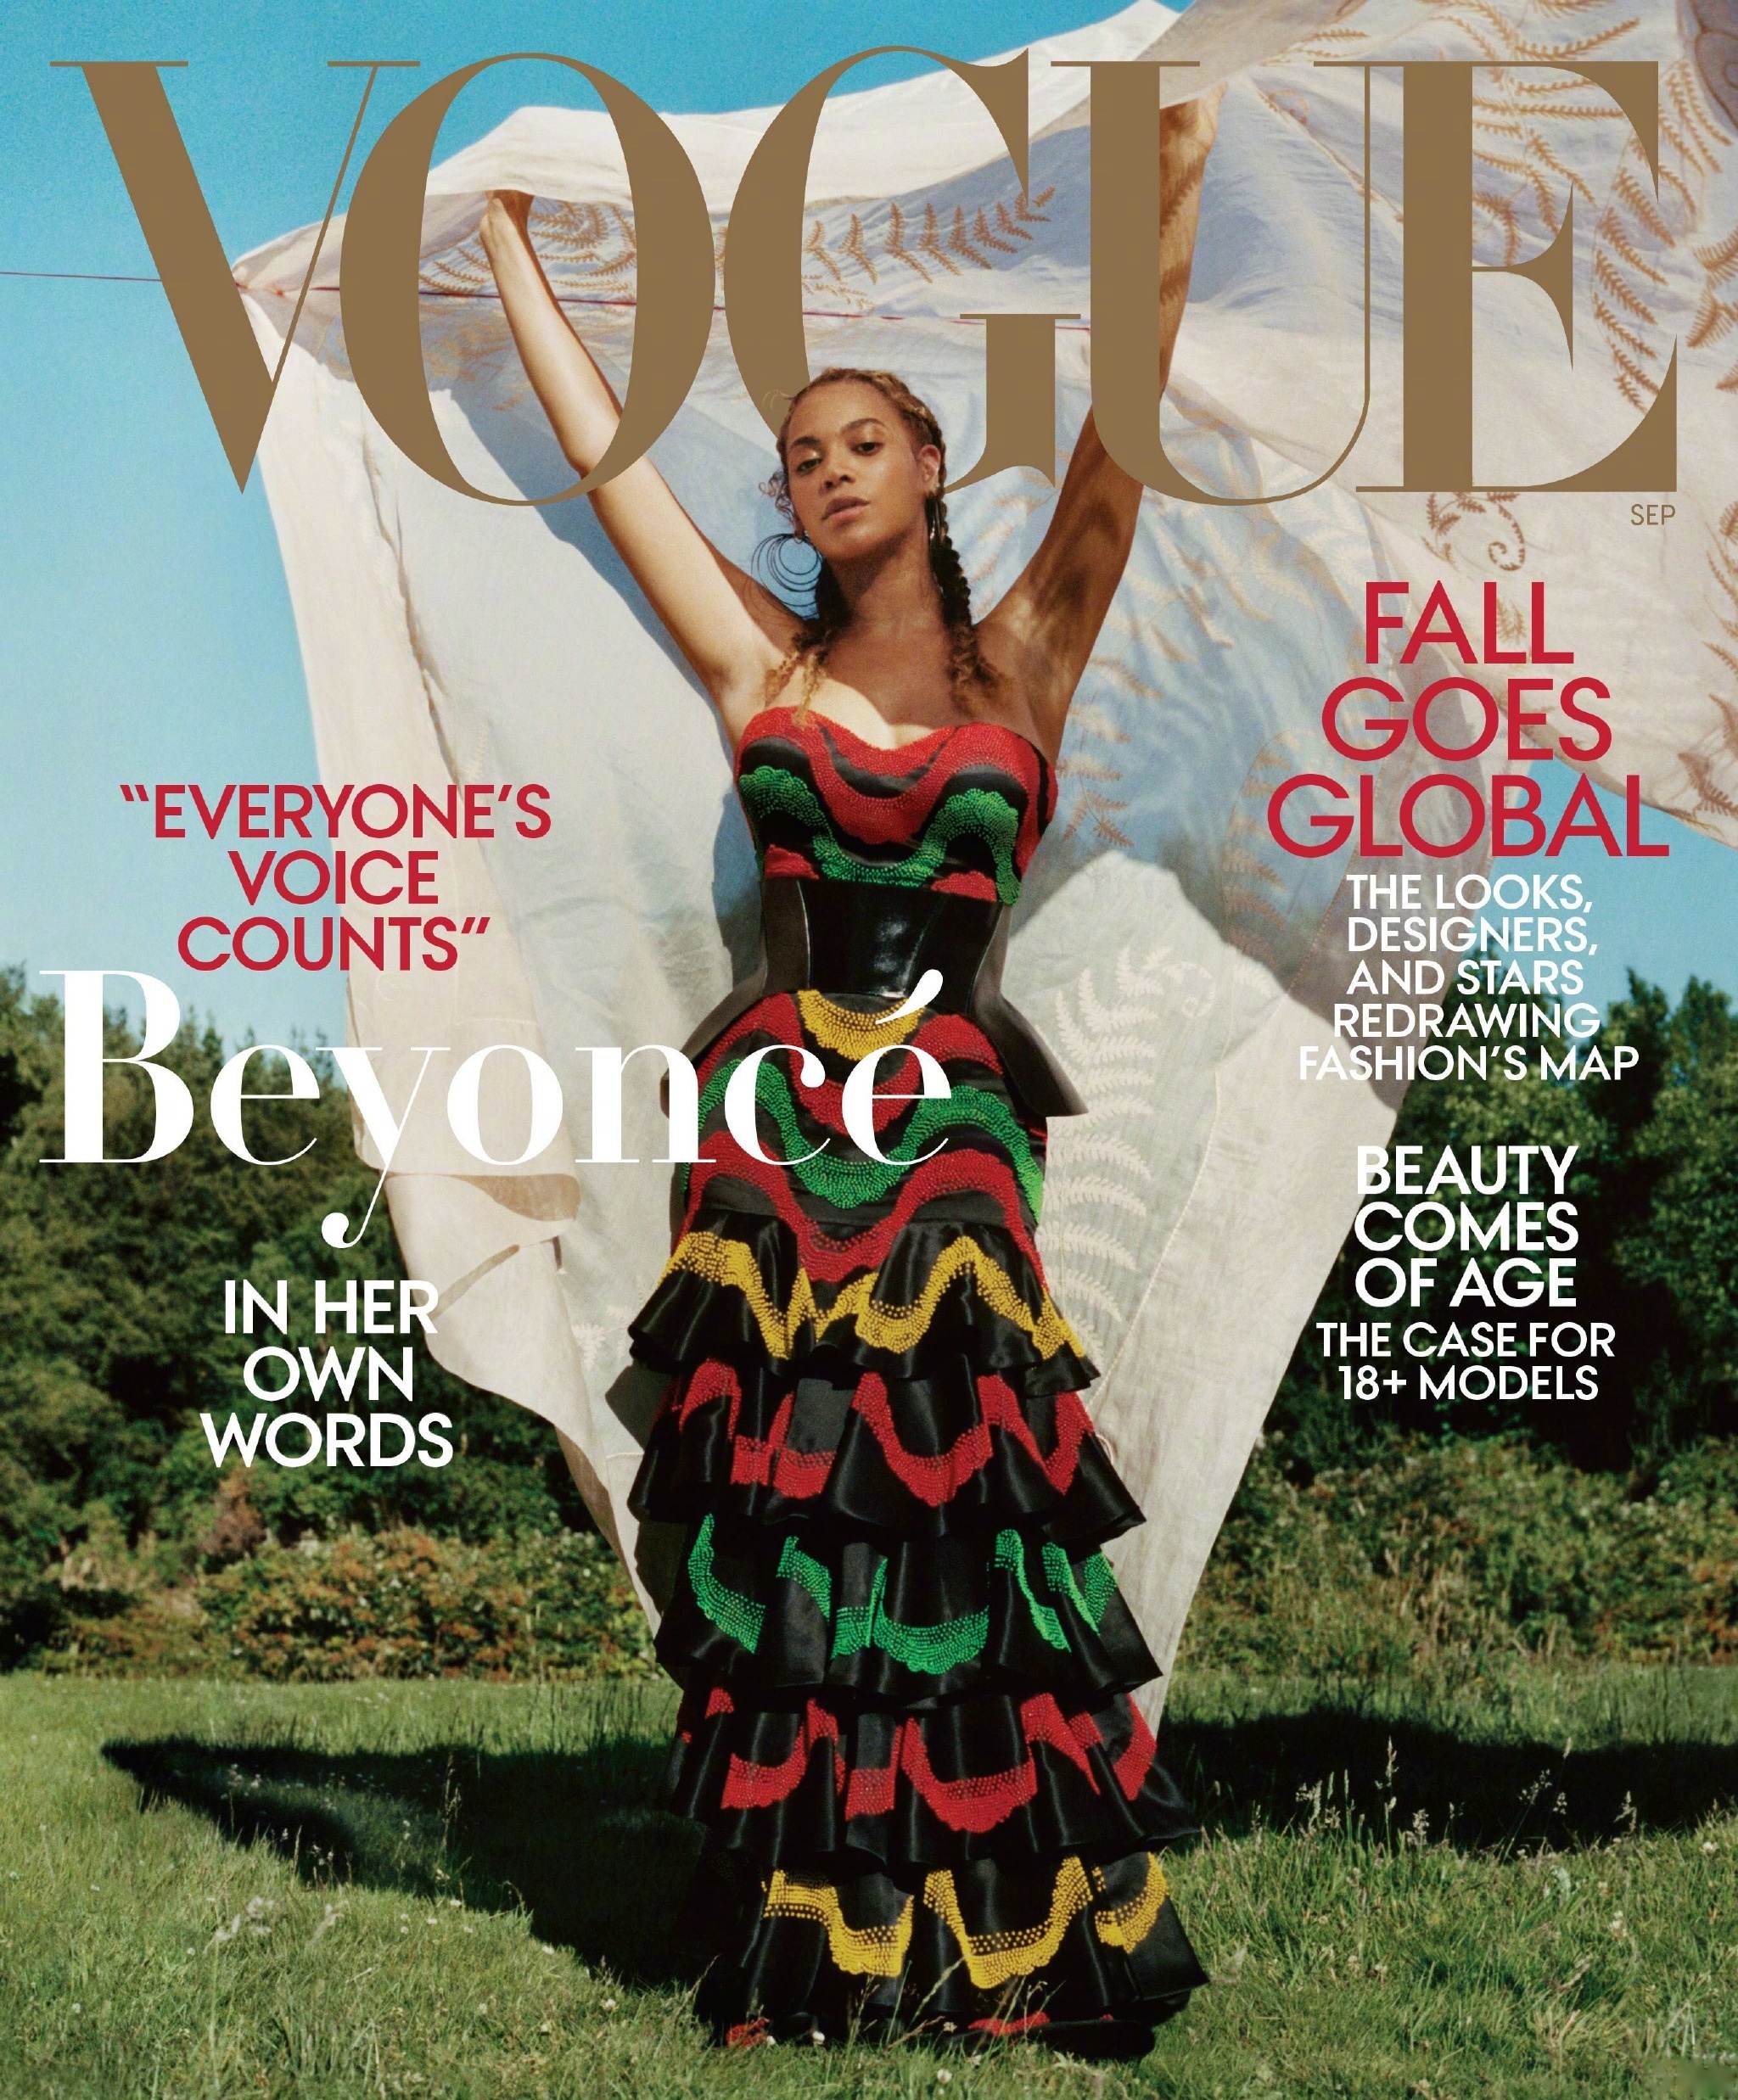 流行天后碧昂丝·诺尔斯近日为《vogue》杂志黄金九月刊拍摄封面,超大